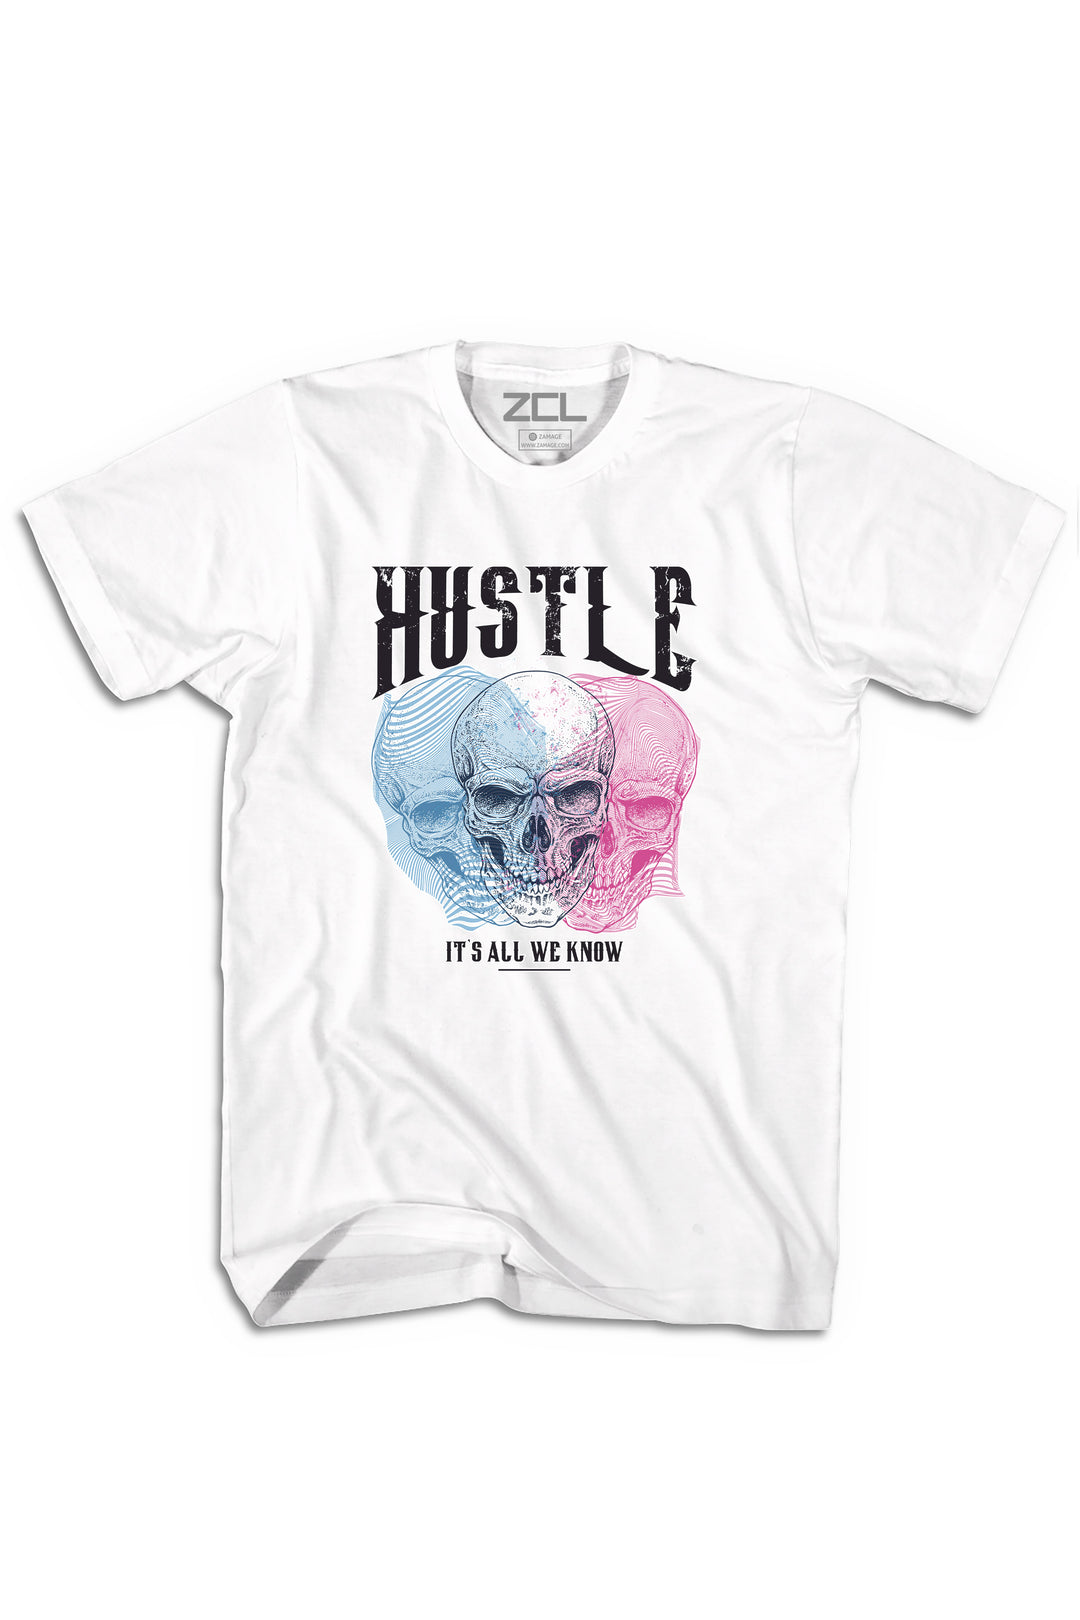 Hustle It's All We Know Tee (Black Logo) - Zamage